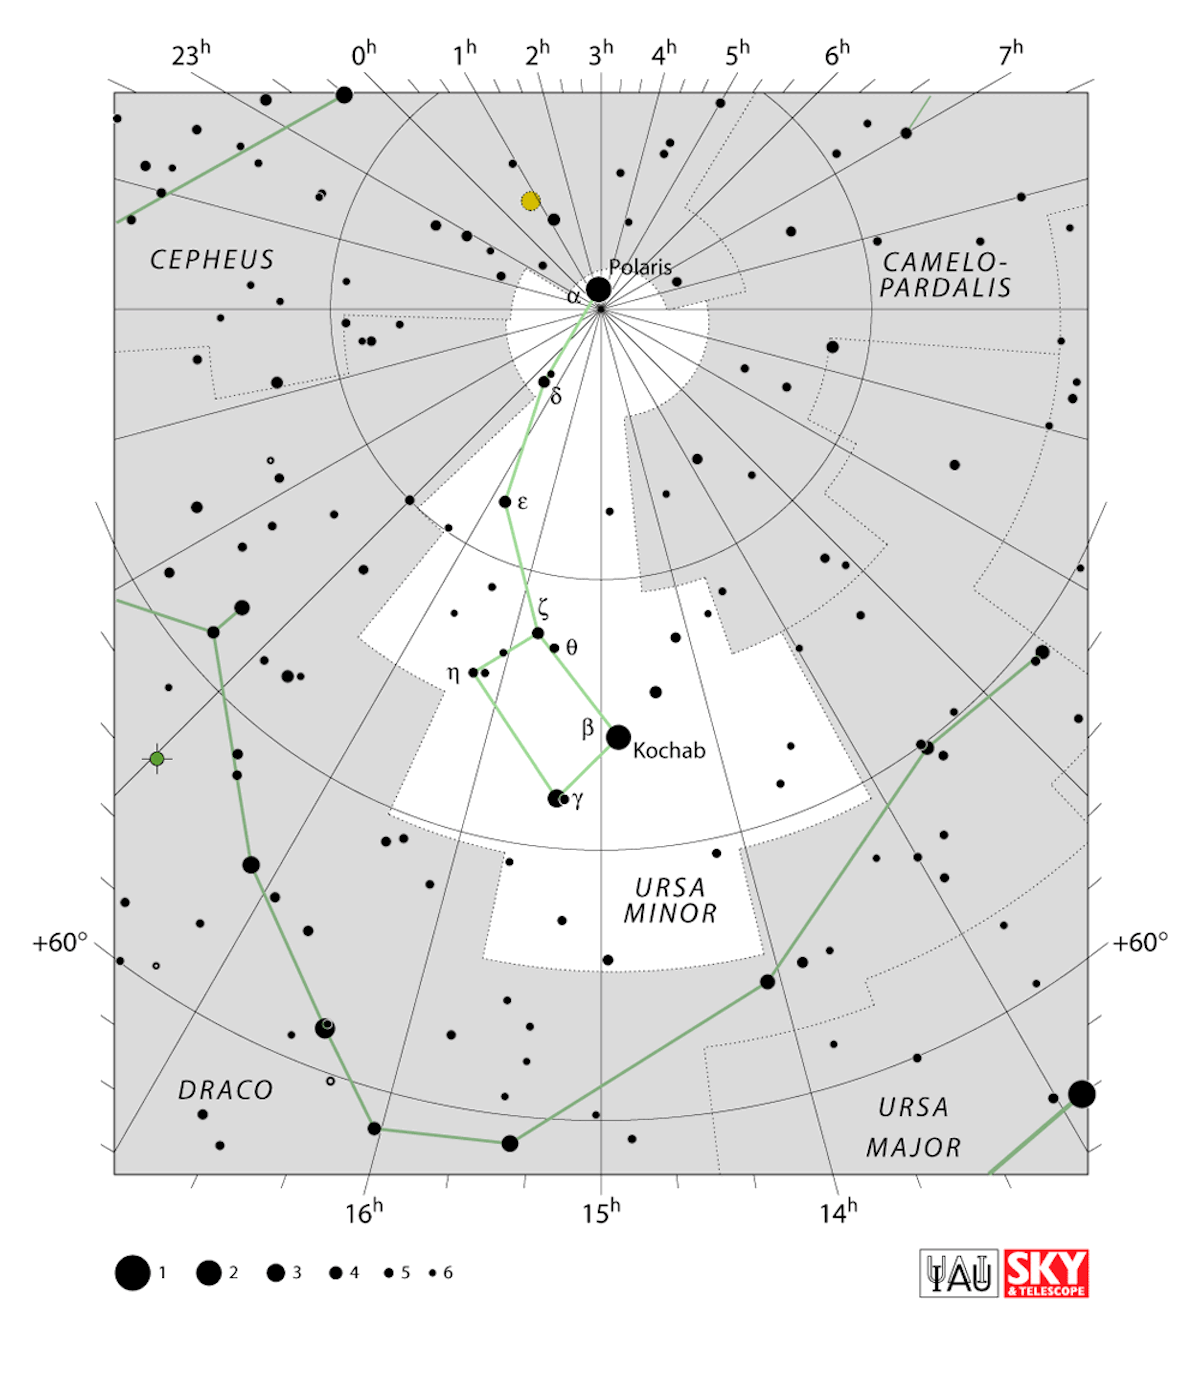 La costellazione dell’Orsa Minore: in evidenza la sagoma del Piccolo carro. Credit: IAU/ SKY & Telescope (https://www.iau.org/static/public/constellations/gif/UMI.gif)